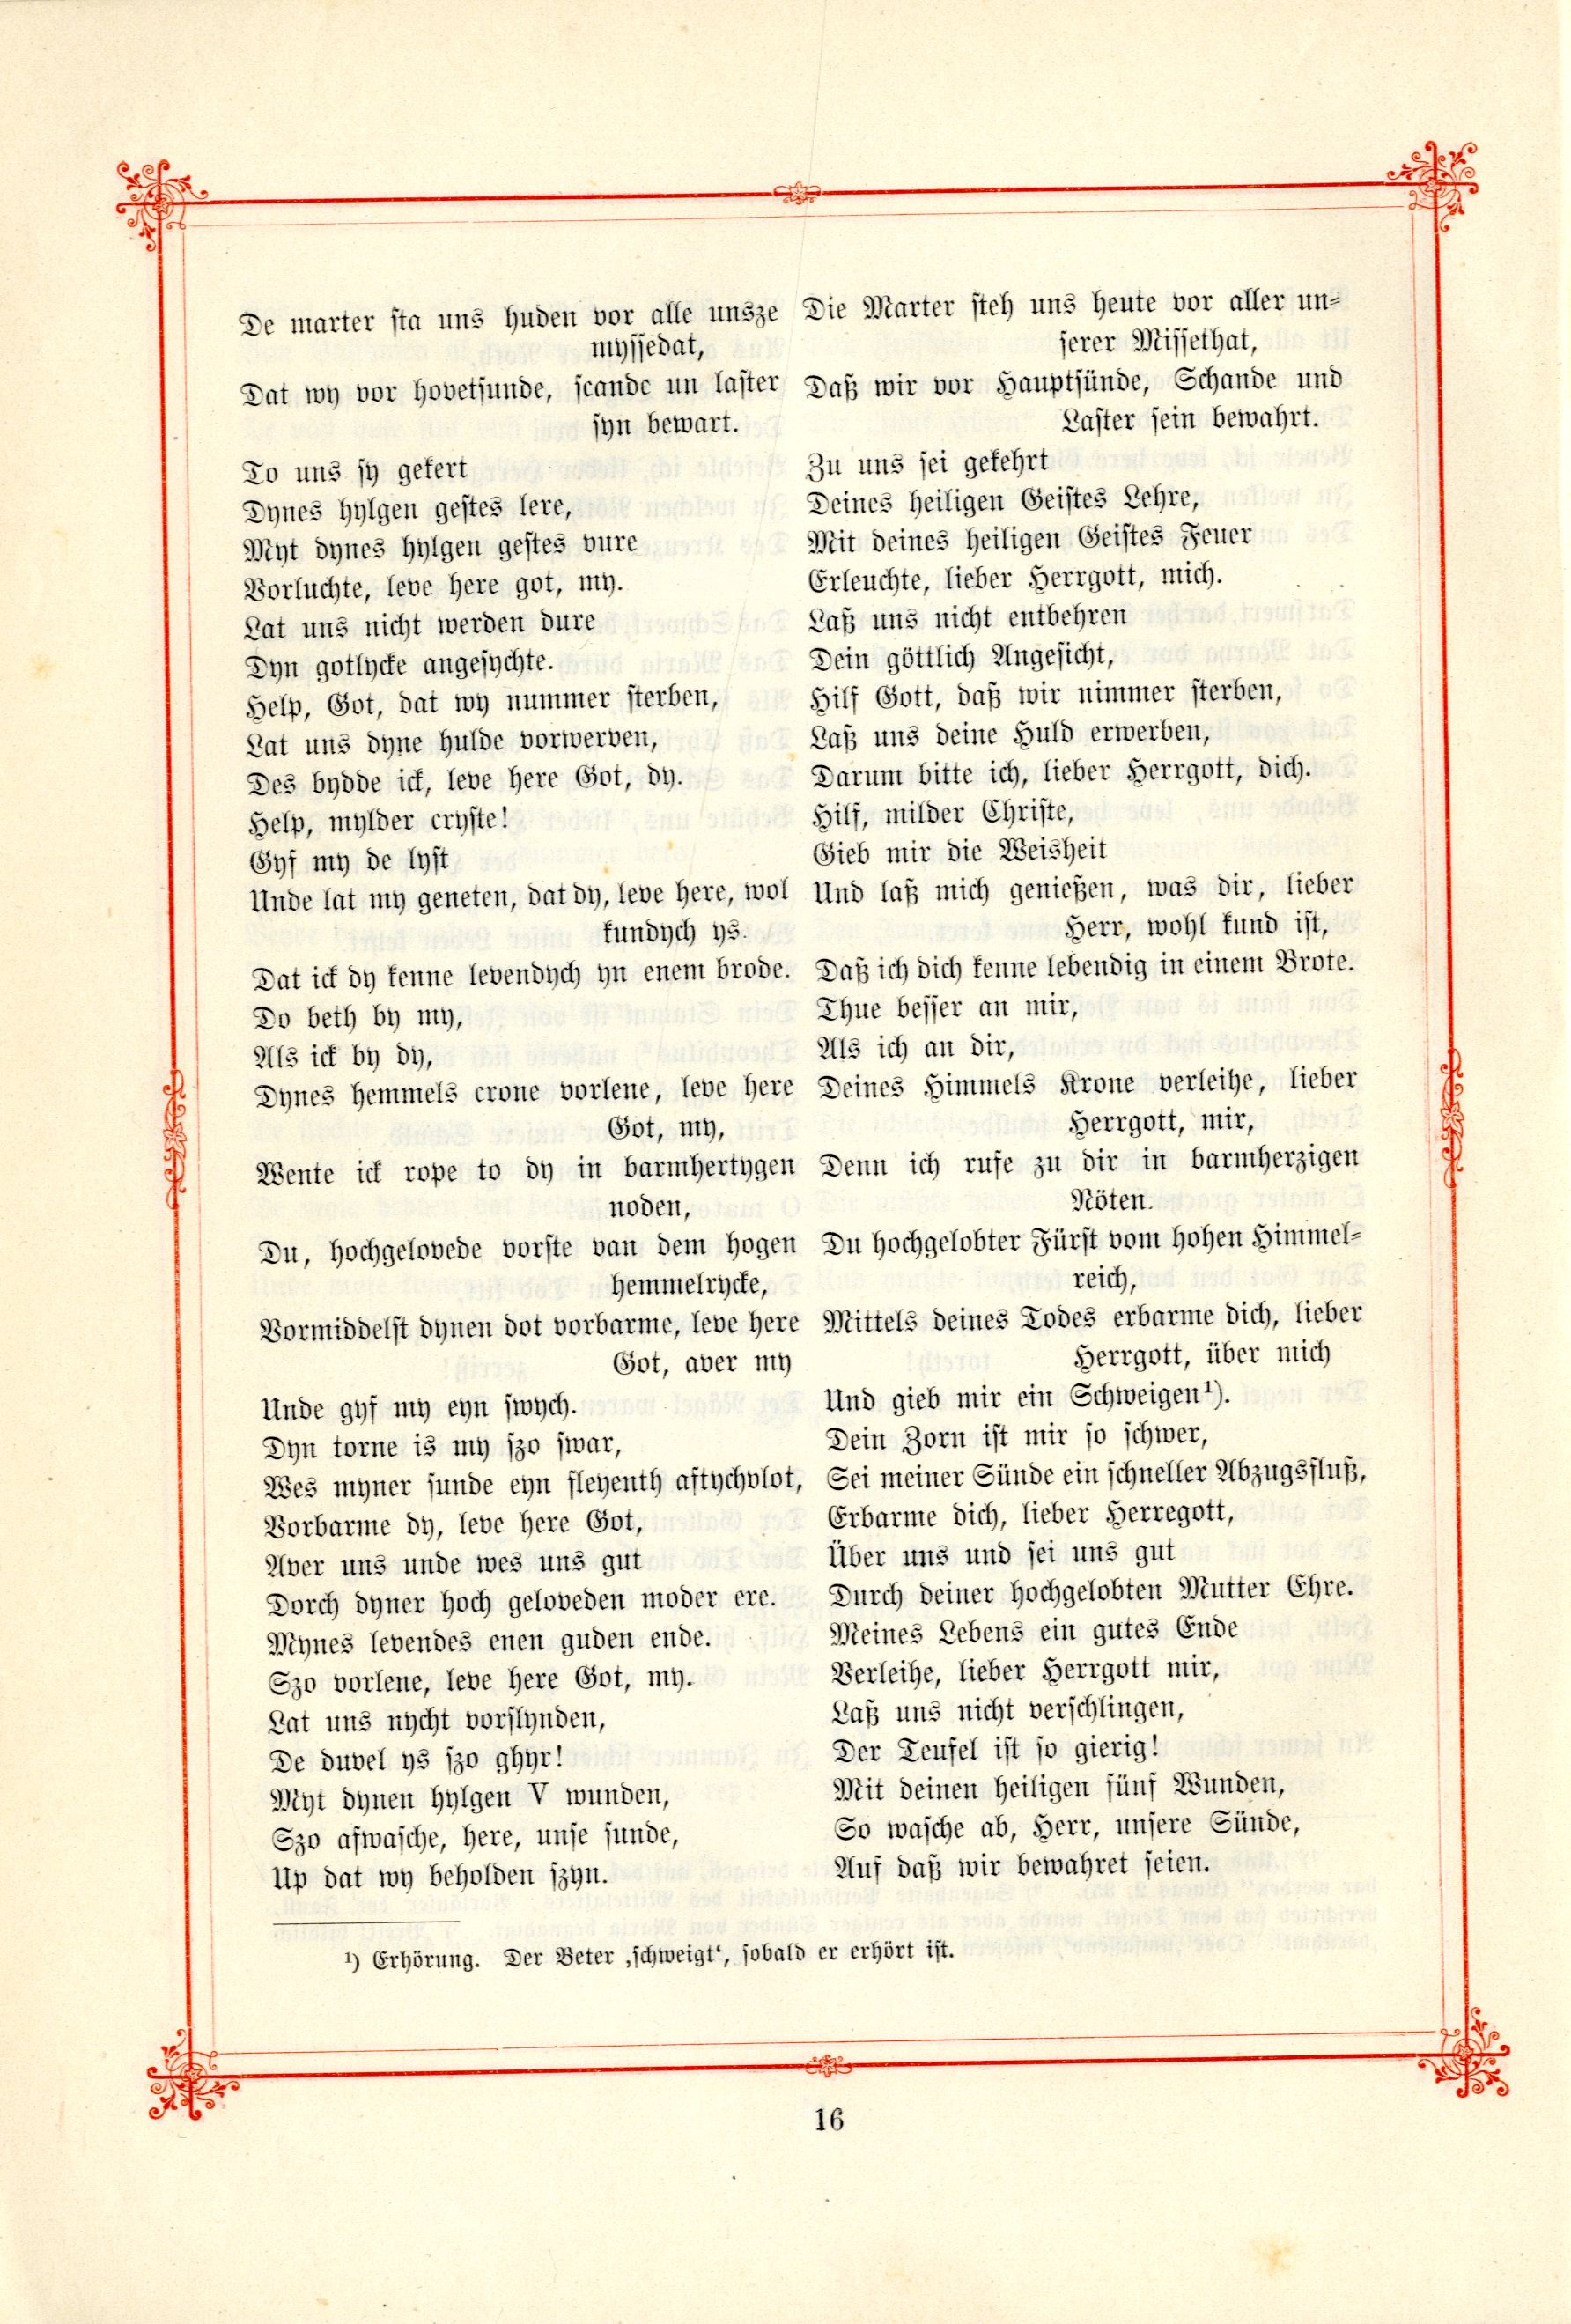 Das Baltische Dichterbuch (1895) | 62. (16) Main body of text